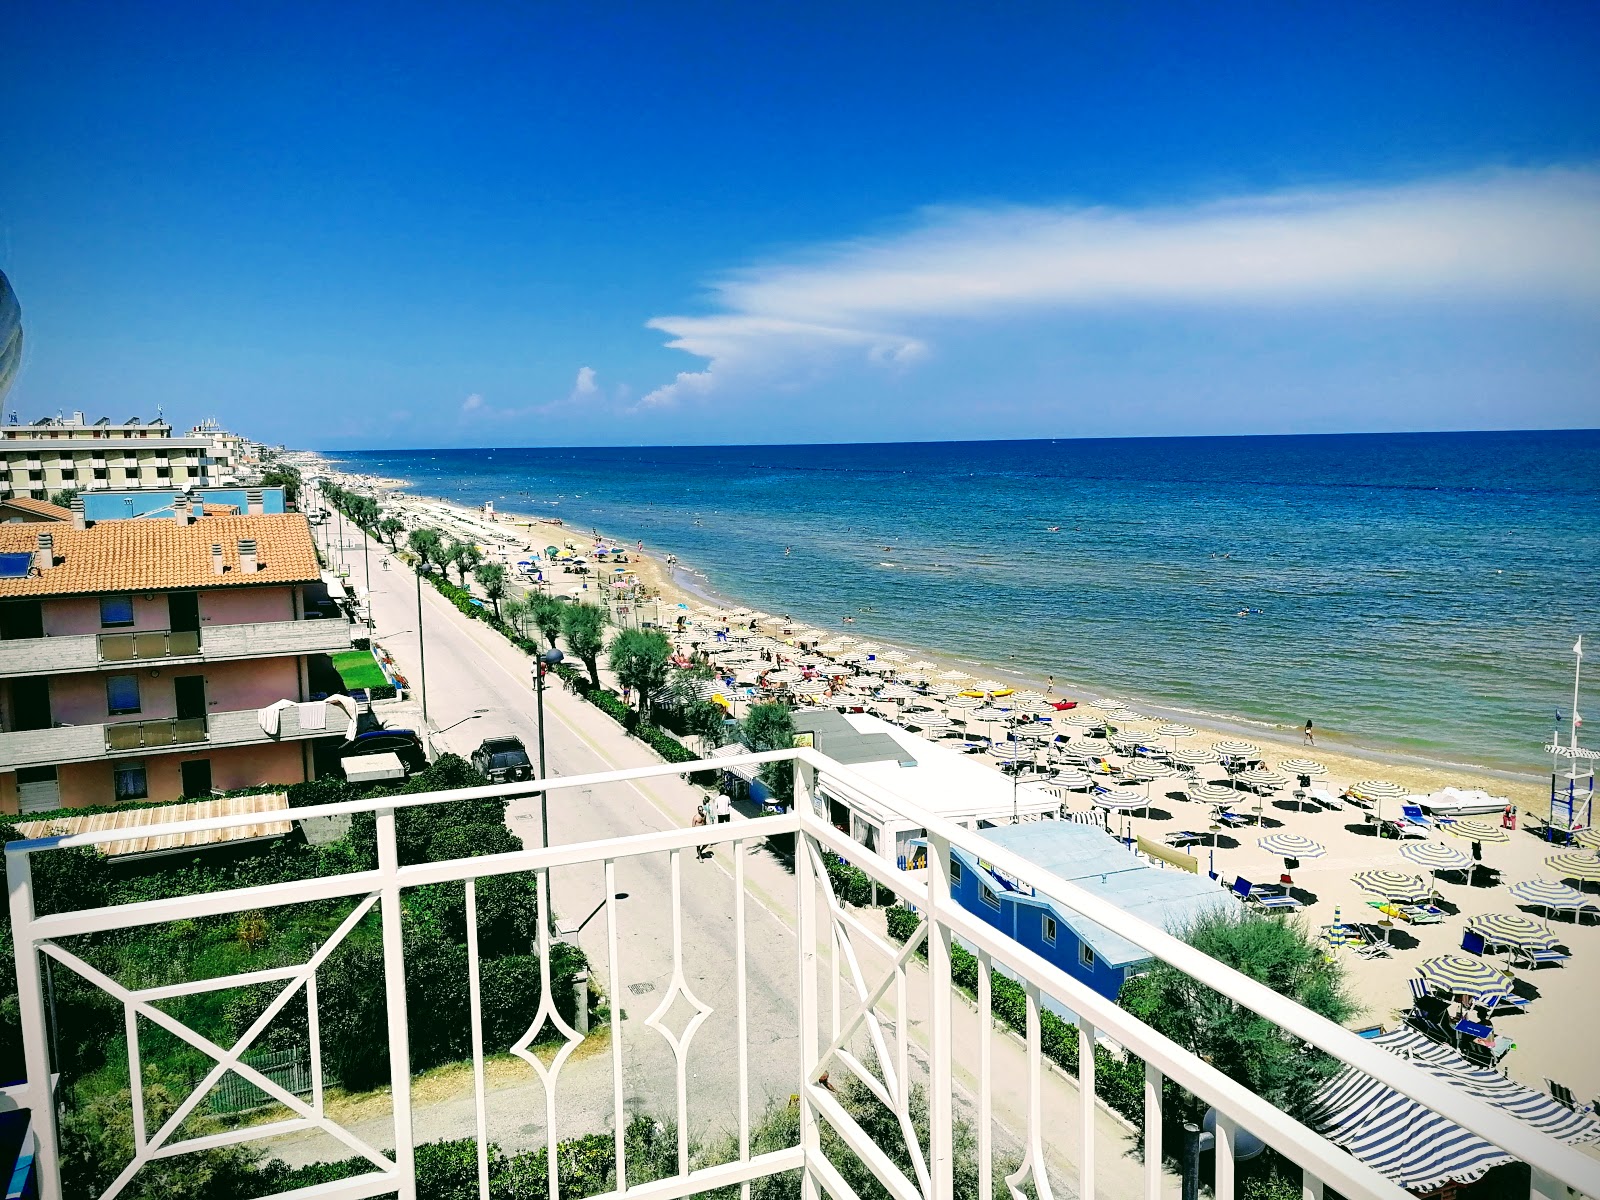 Foto von Marotta beach - beliebter Ort unter Entspannungskennern